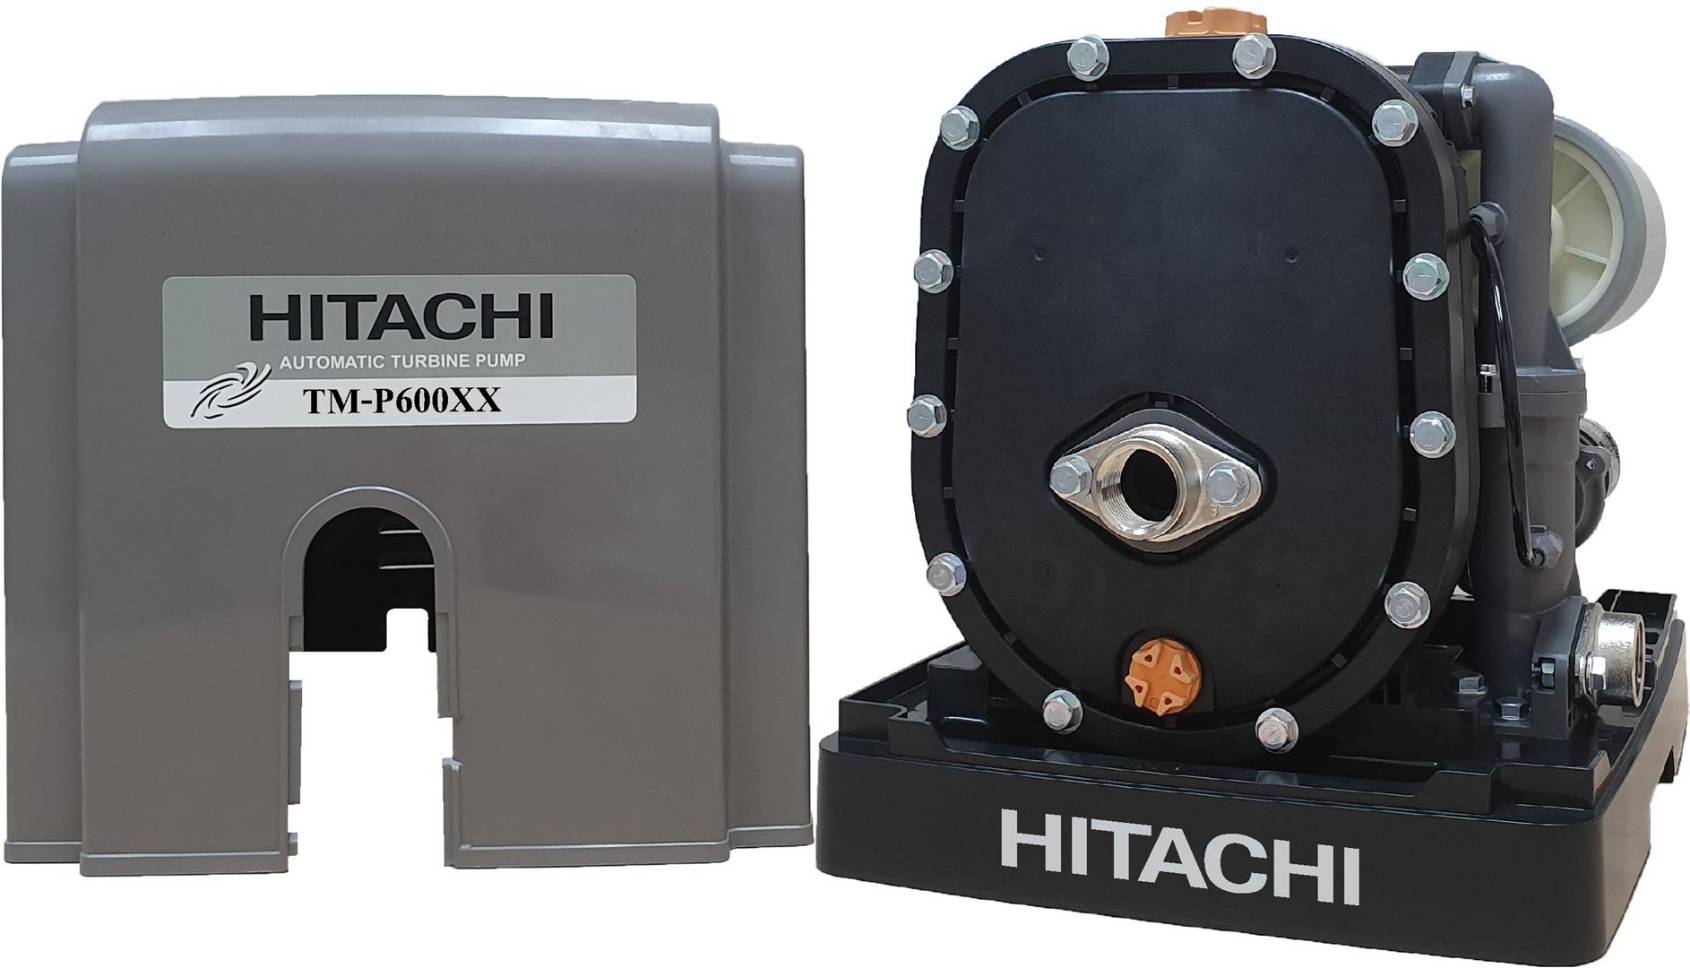 HITACHI-TM-P600XX-ปั๊มน้ำอัตโนมัติแบบเทอร์ไบน์-2-ใบพัด-ขนาด-600-วัตต์-แรงดันน้ำคงที่-ทำงานเงียบ-ปริมาณน้ำเพิ่มขึ้น